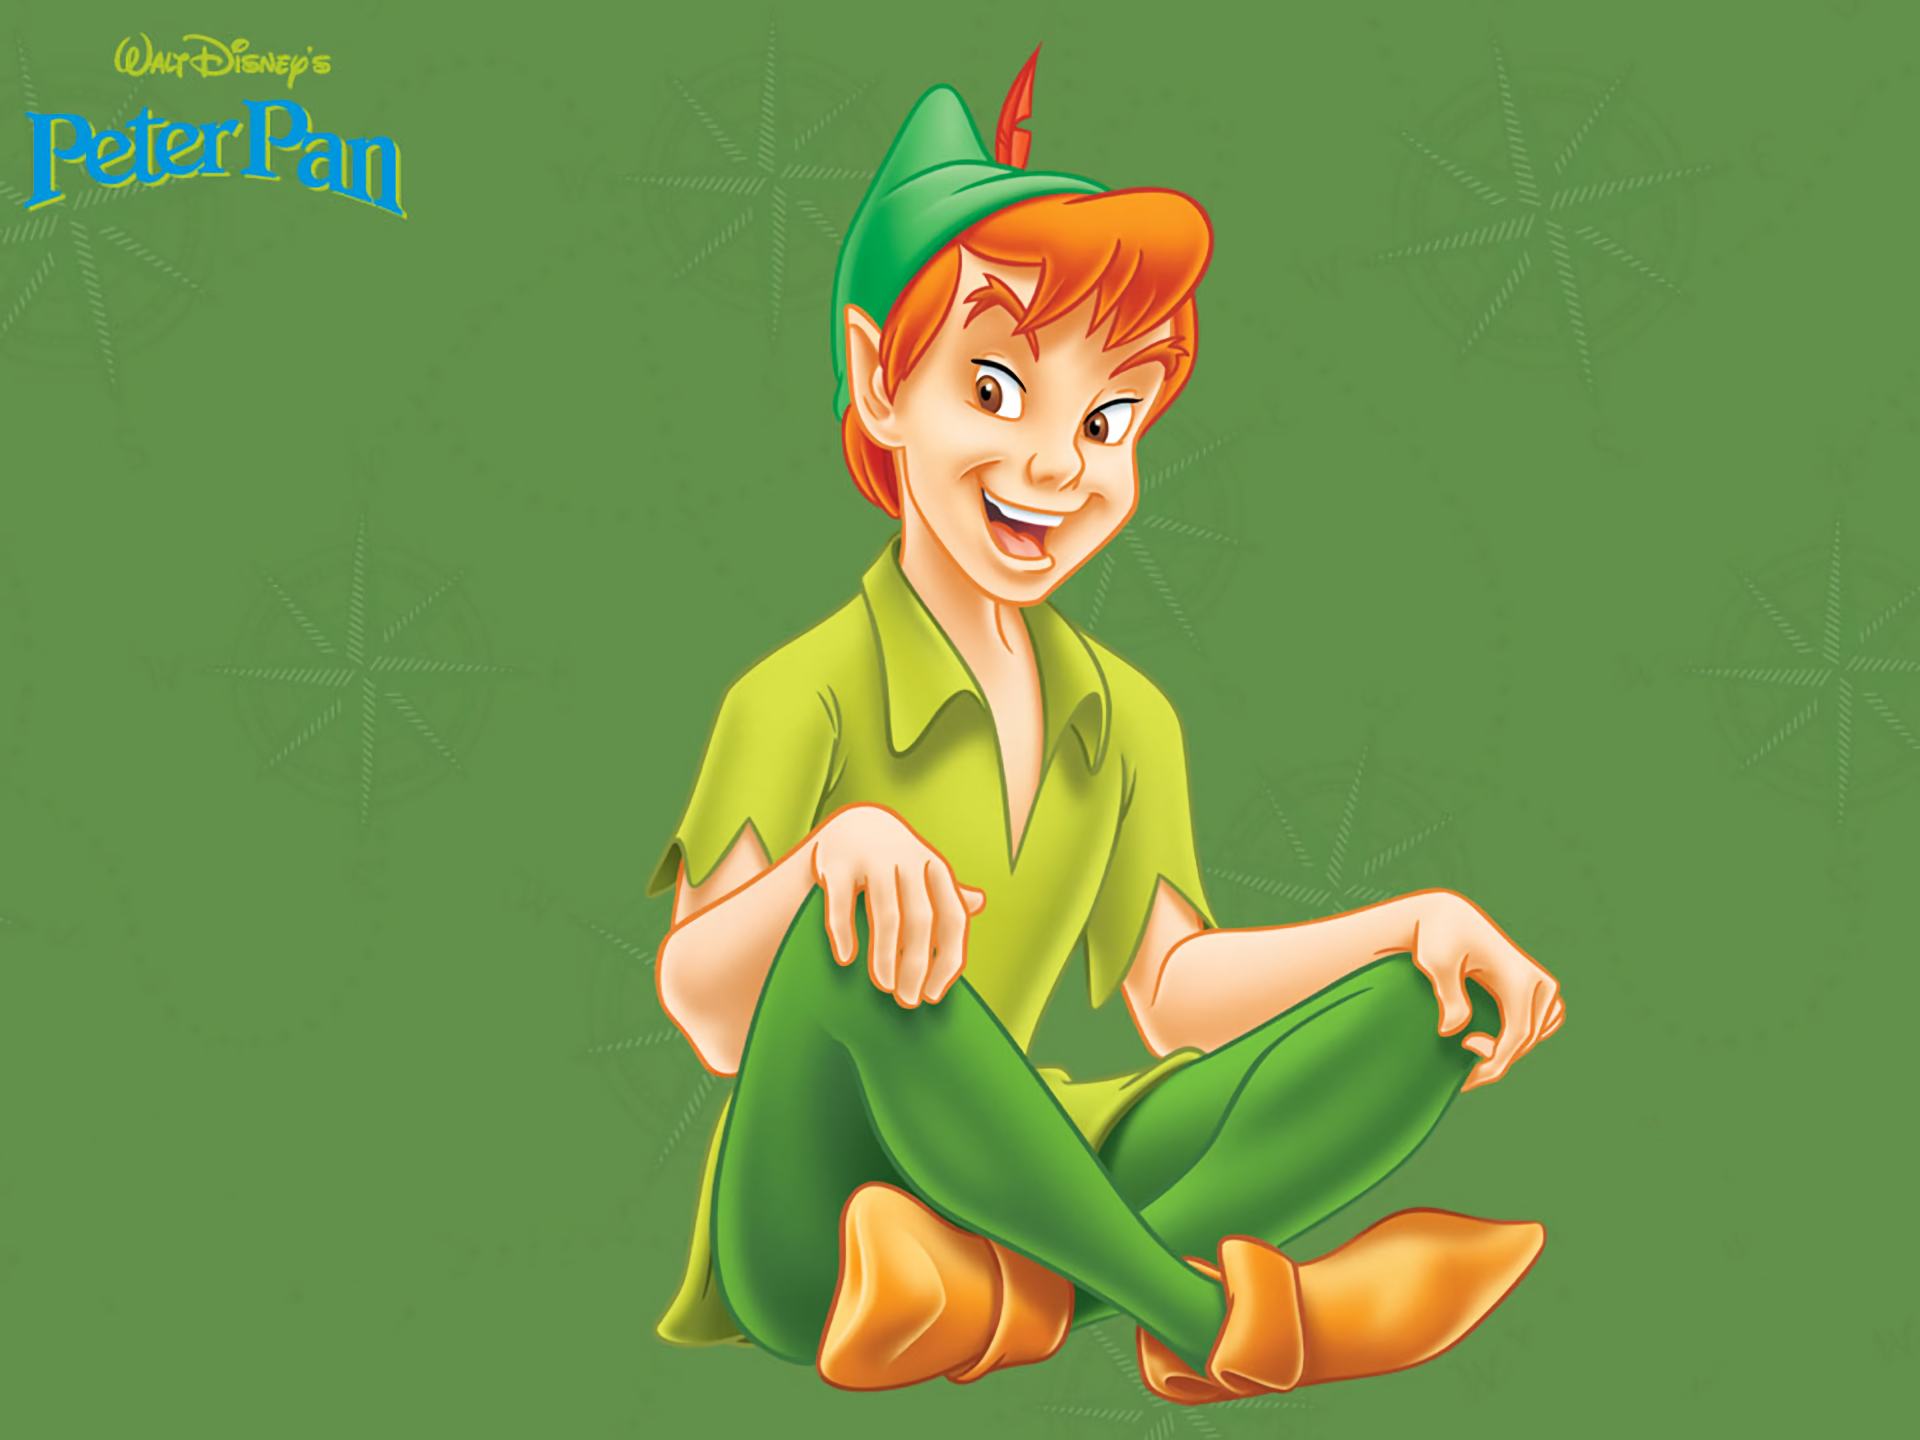 Peter Pan 1920x1440